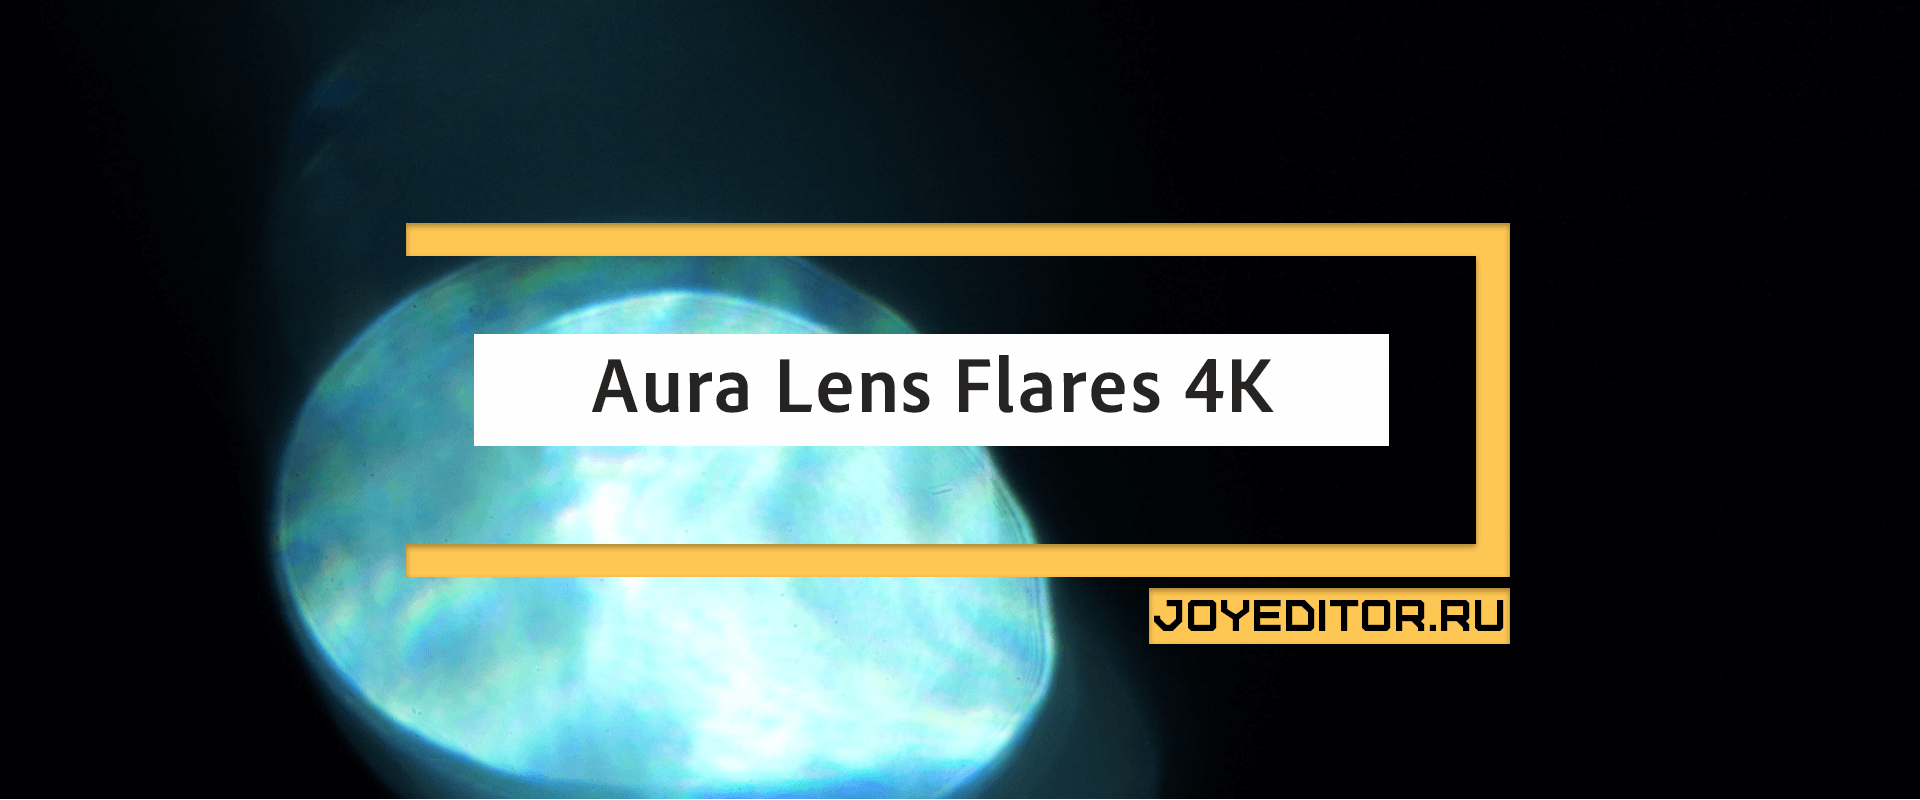 Aura Lens Flares 4K